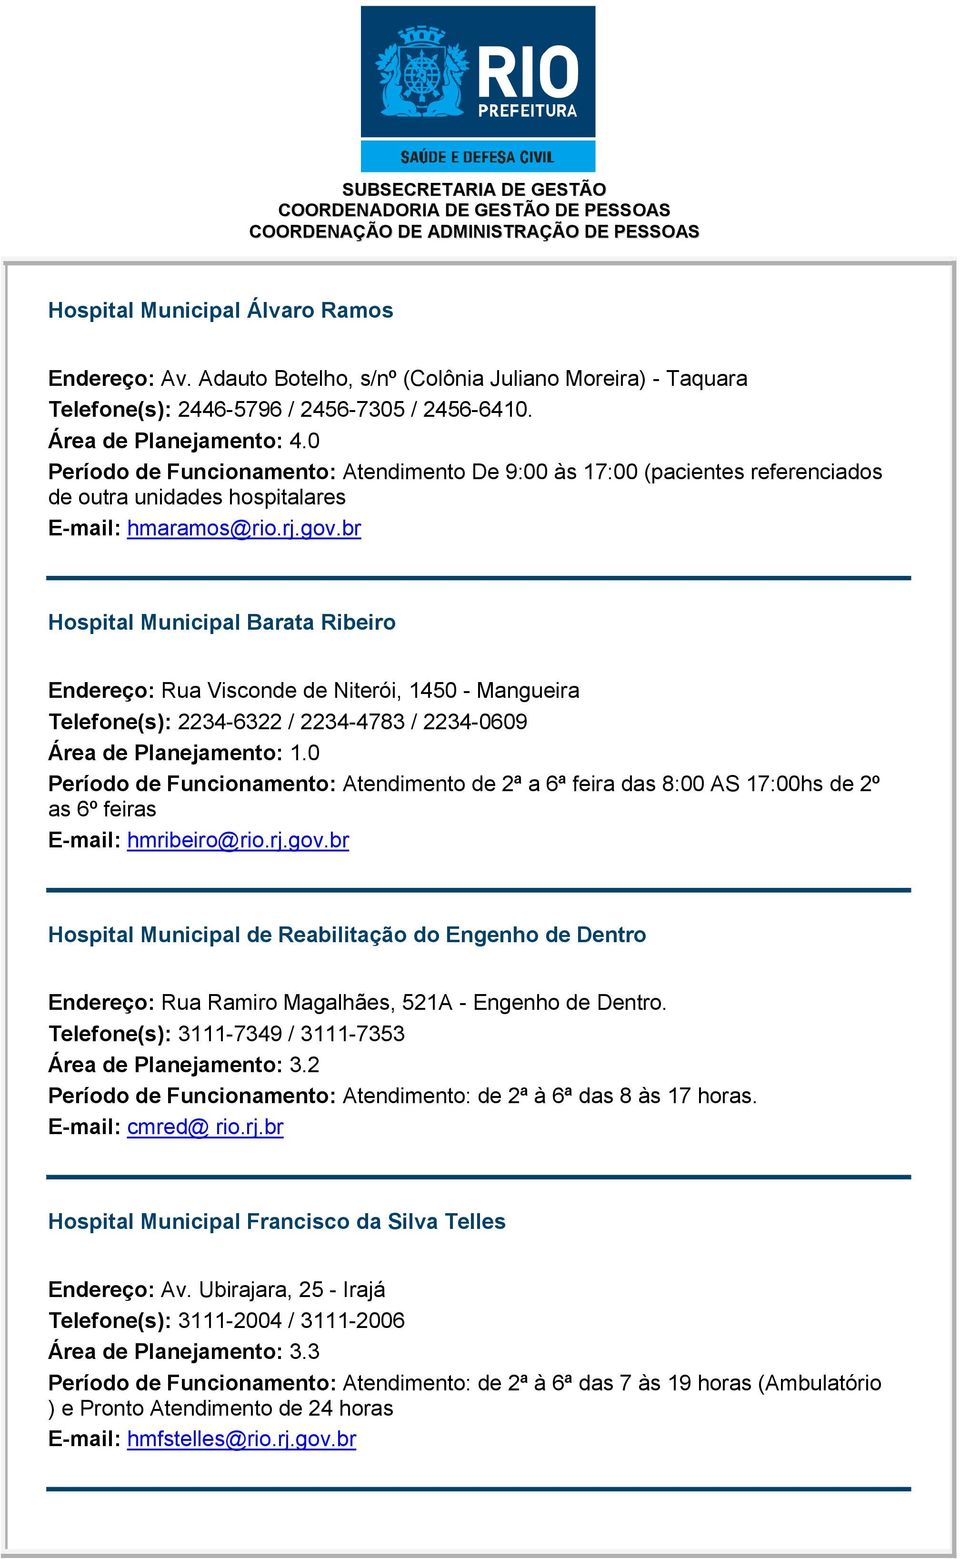 br Hospital Municipal Barata Ribeiro Endereço: Rua Visconde de Niterói, 1450 - Mangueira Telefone(s): 2234-6322 / 2234-4783 / 2234-0609 Área de Planejamento: 1.